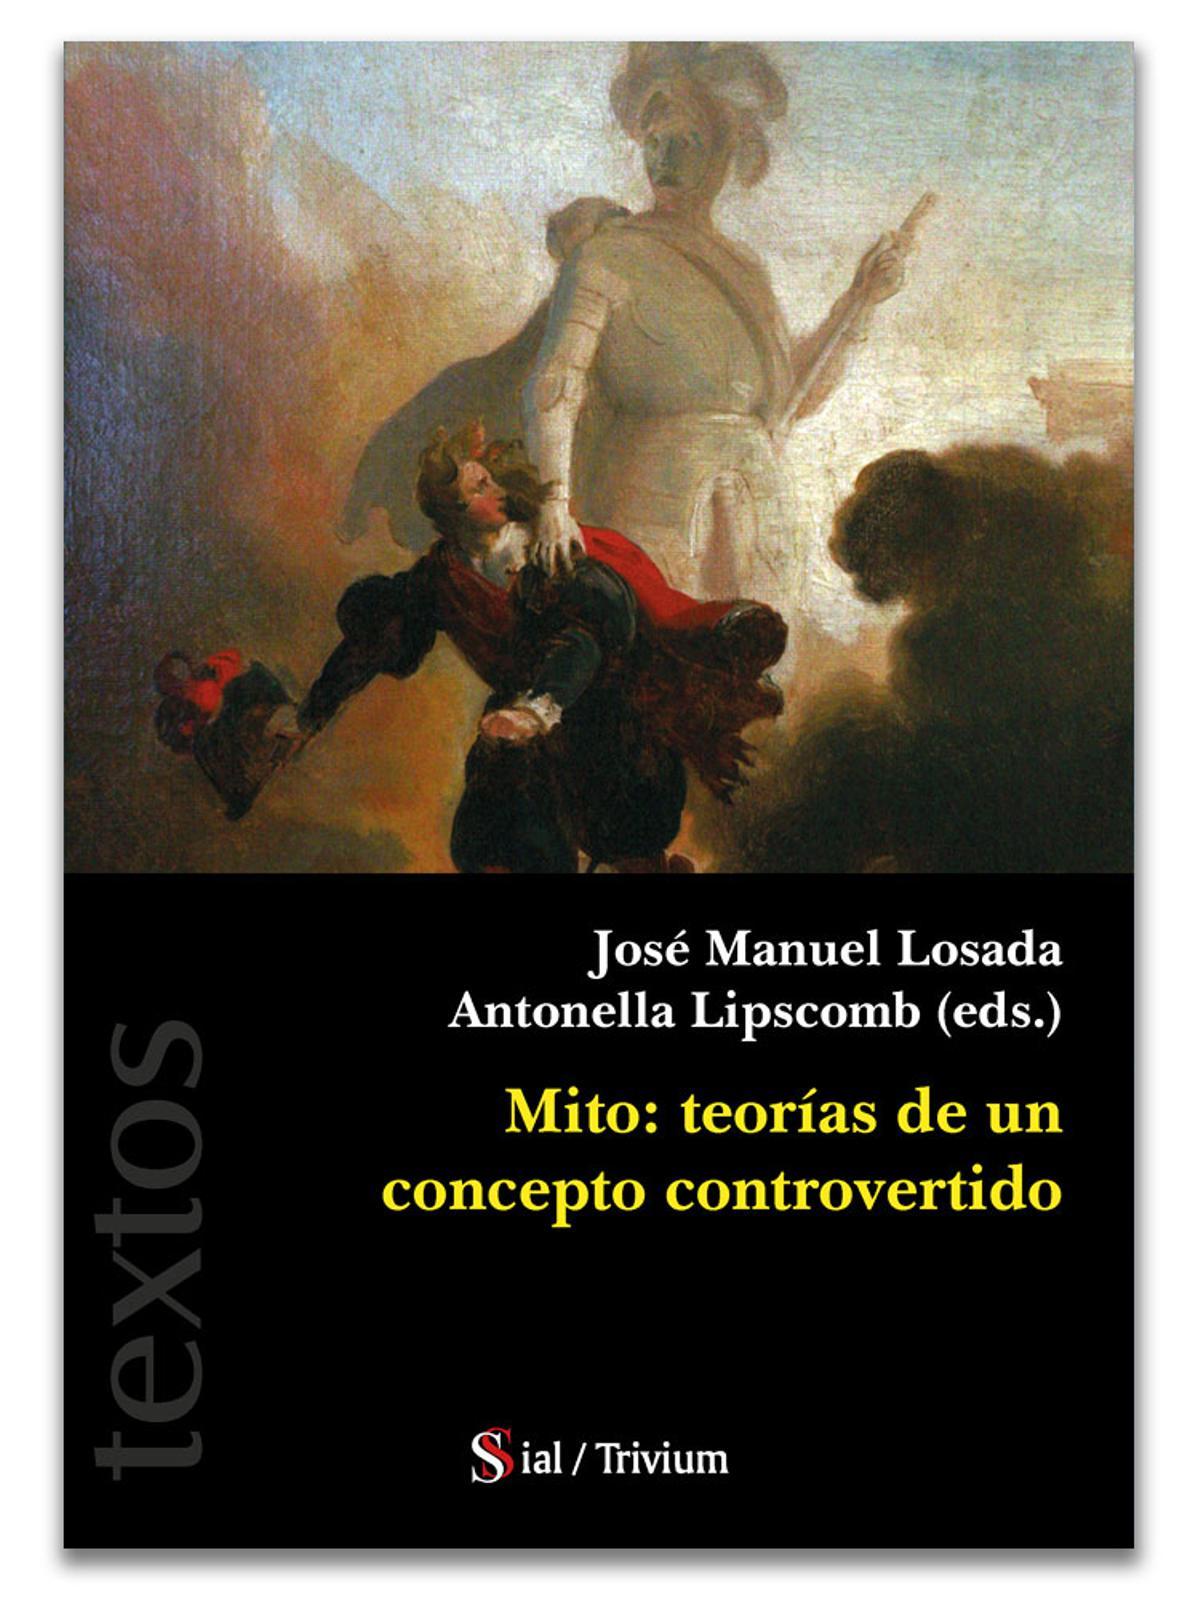 Portada del libro de José Manuel Losada